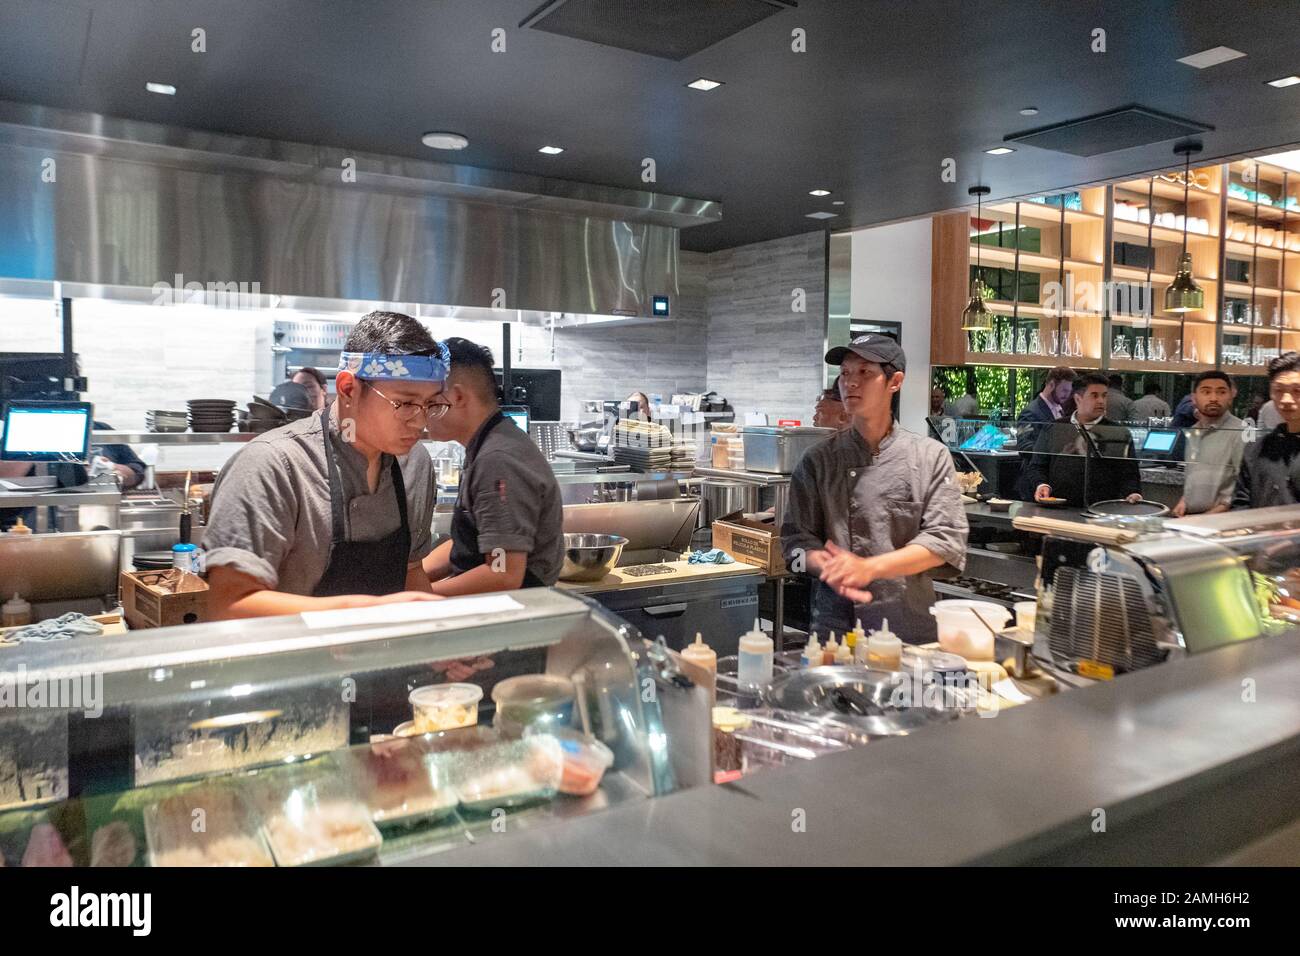 Cuisine et bar à sushi lors d'un grand événement d'ouverture à Bamboo Sushi, un restaurant respectueux de l'environnement au City Center Bishop Ranch, San Ramon, Californie, décembre 2019. Bamboo Sushi a été le premier restaurant à être certifié durable par la Green Restaurant Association, et le premier restaurant à obtenir le statut de B Corp. () Banque D'Images